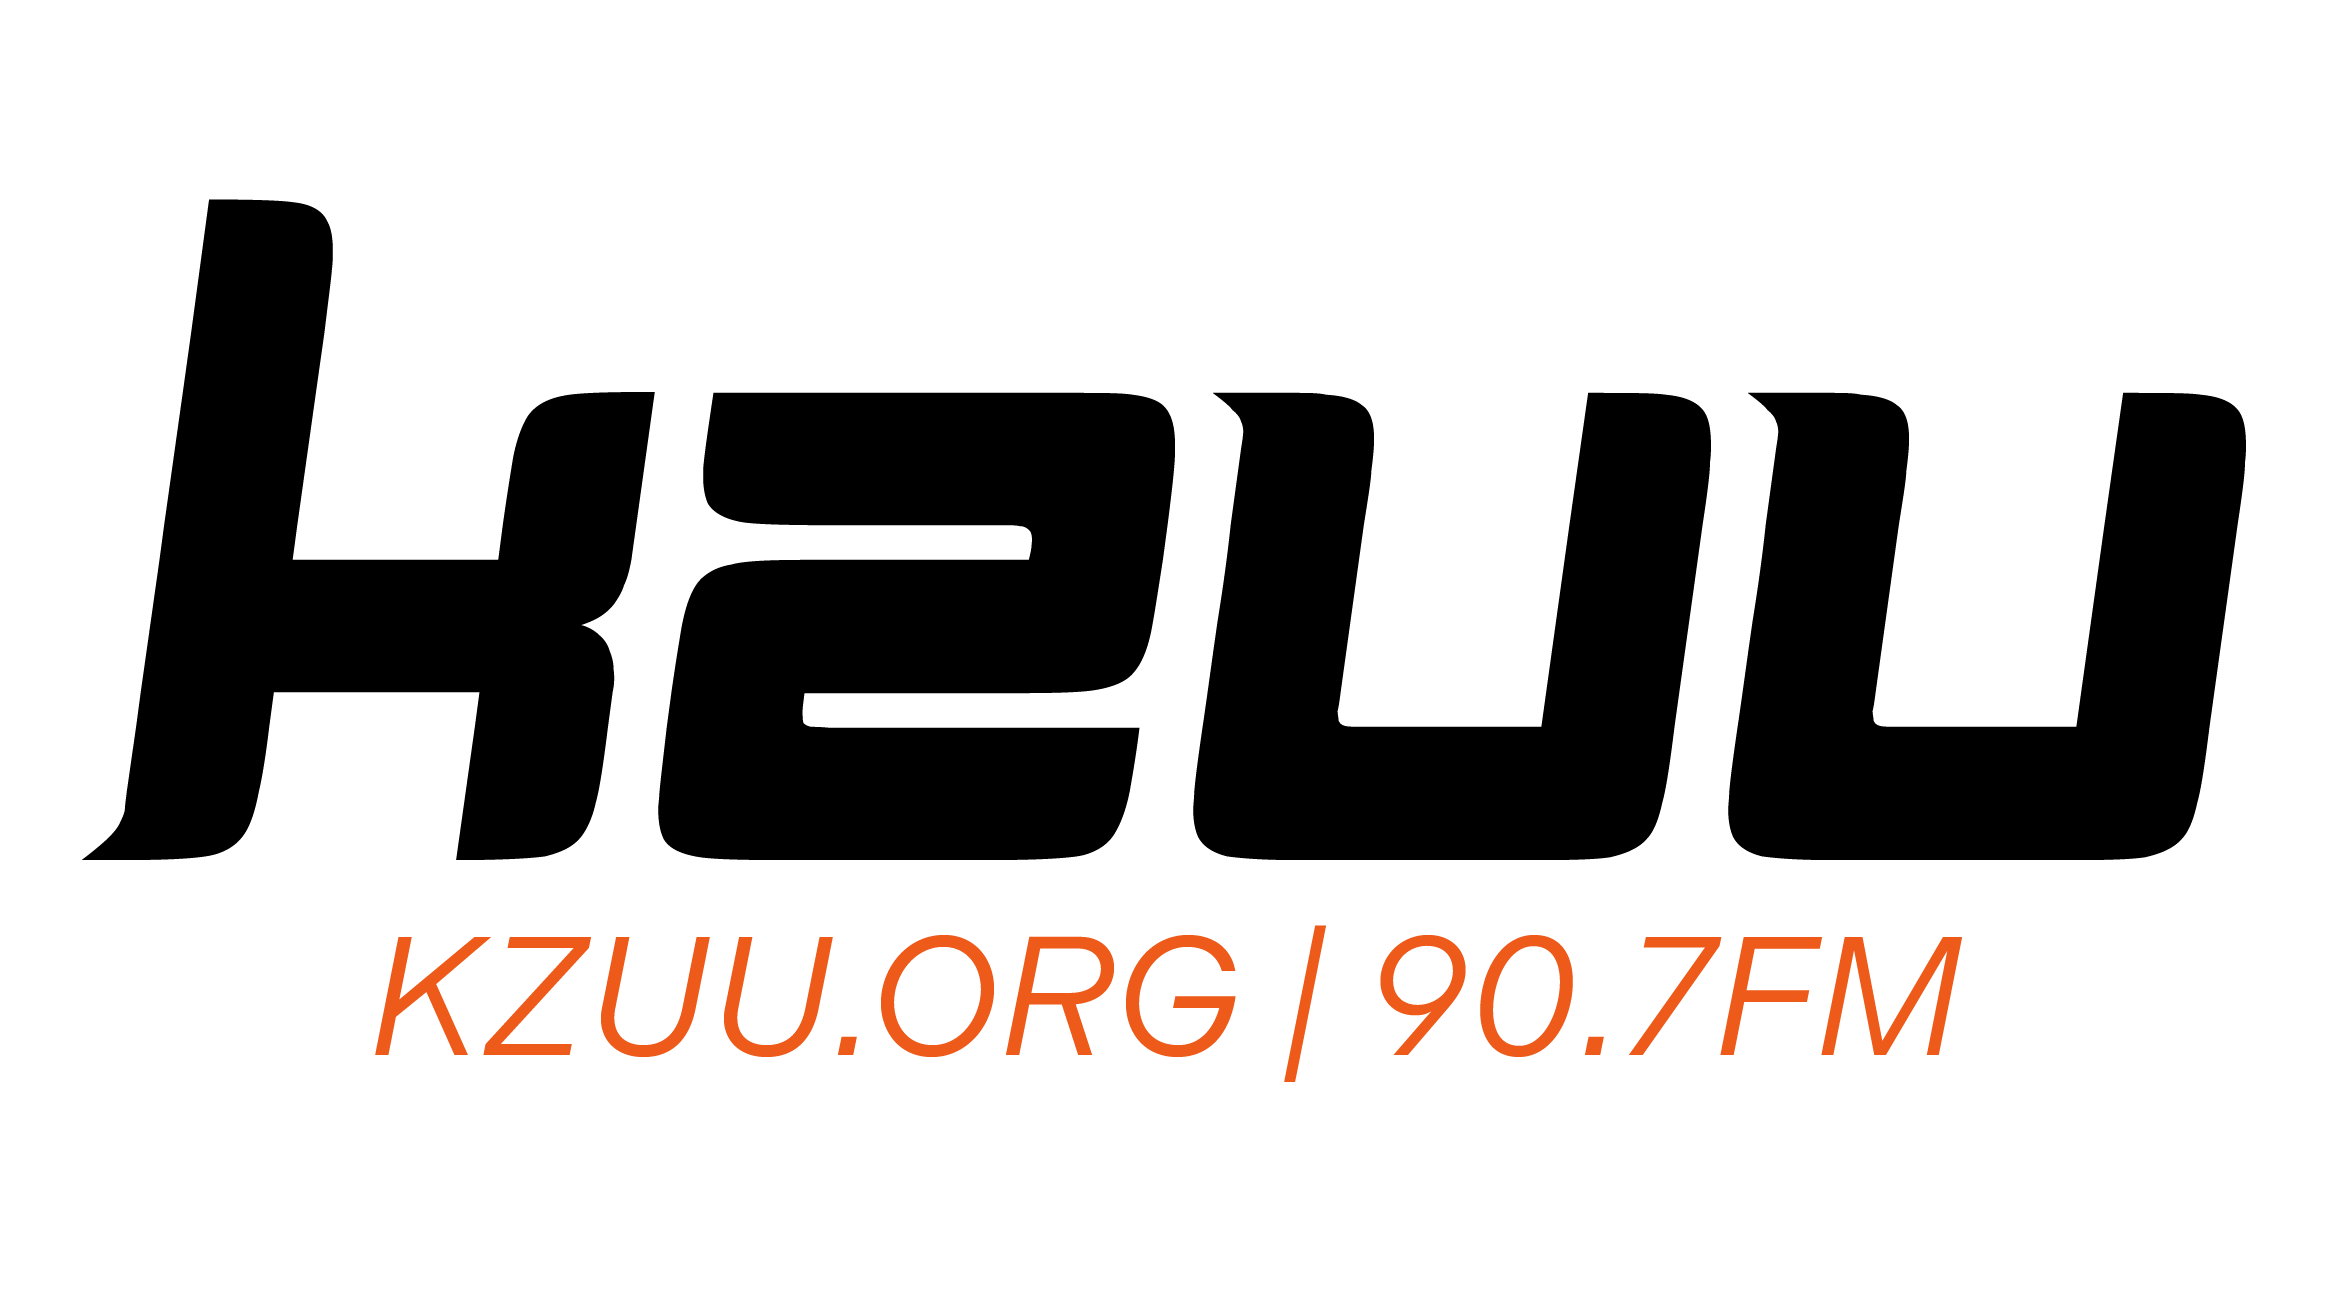 KZUU 90.7 FM